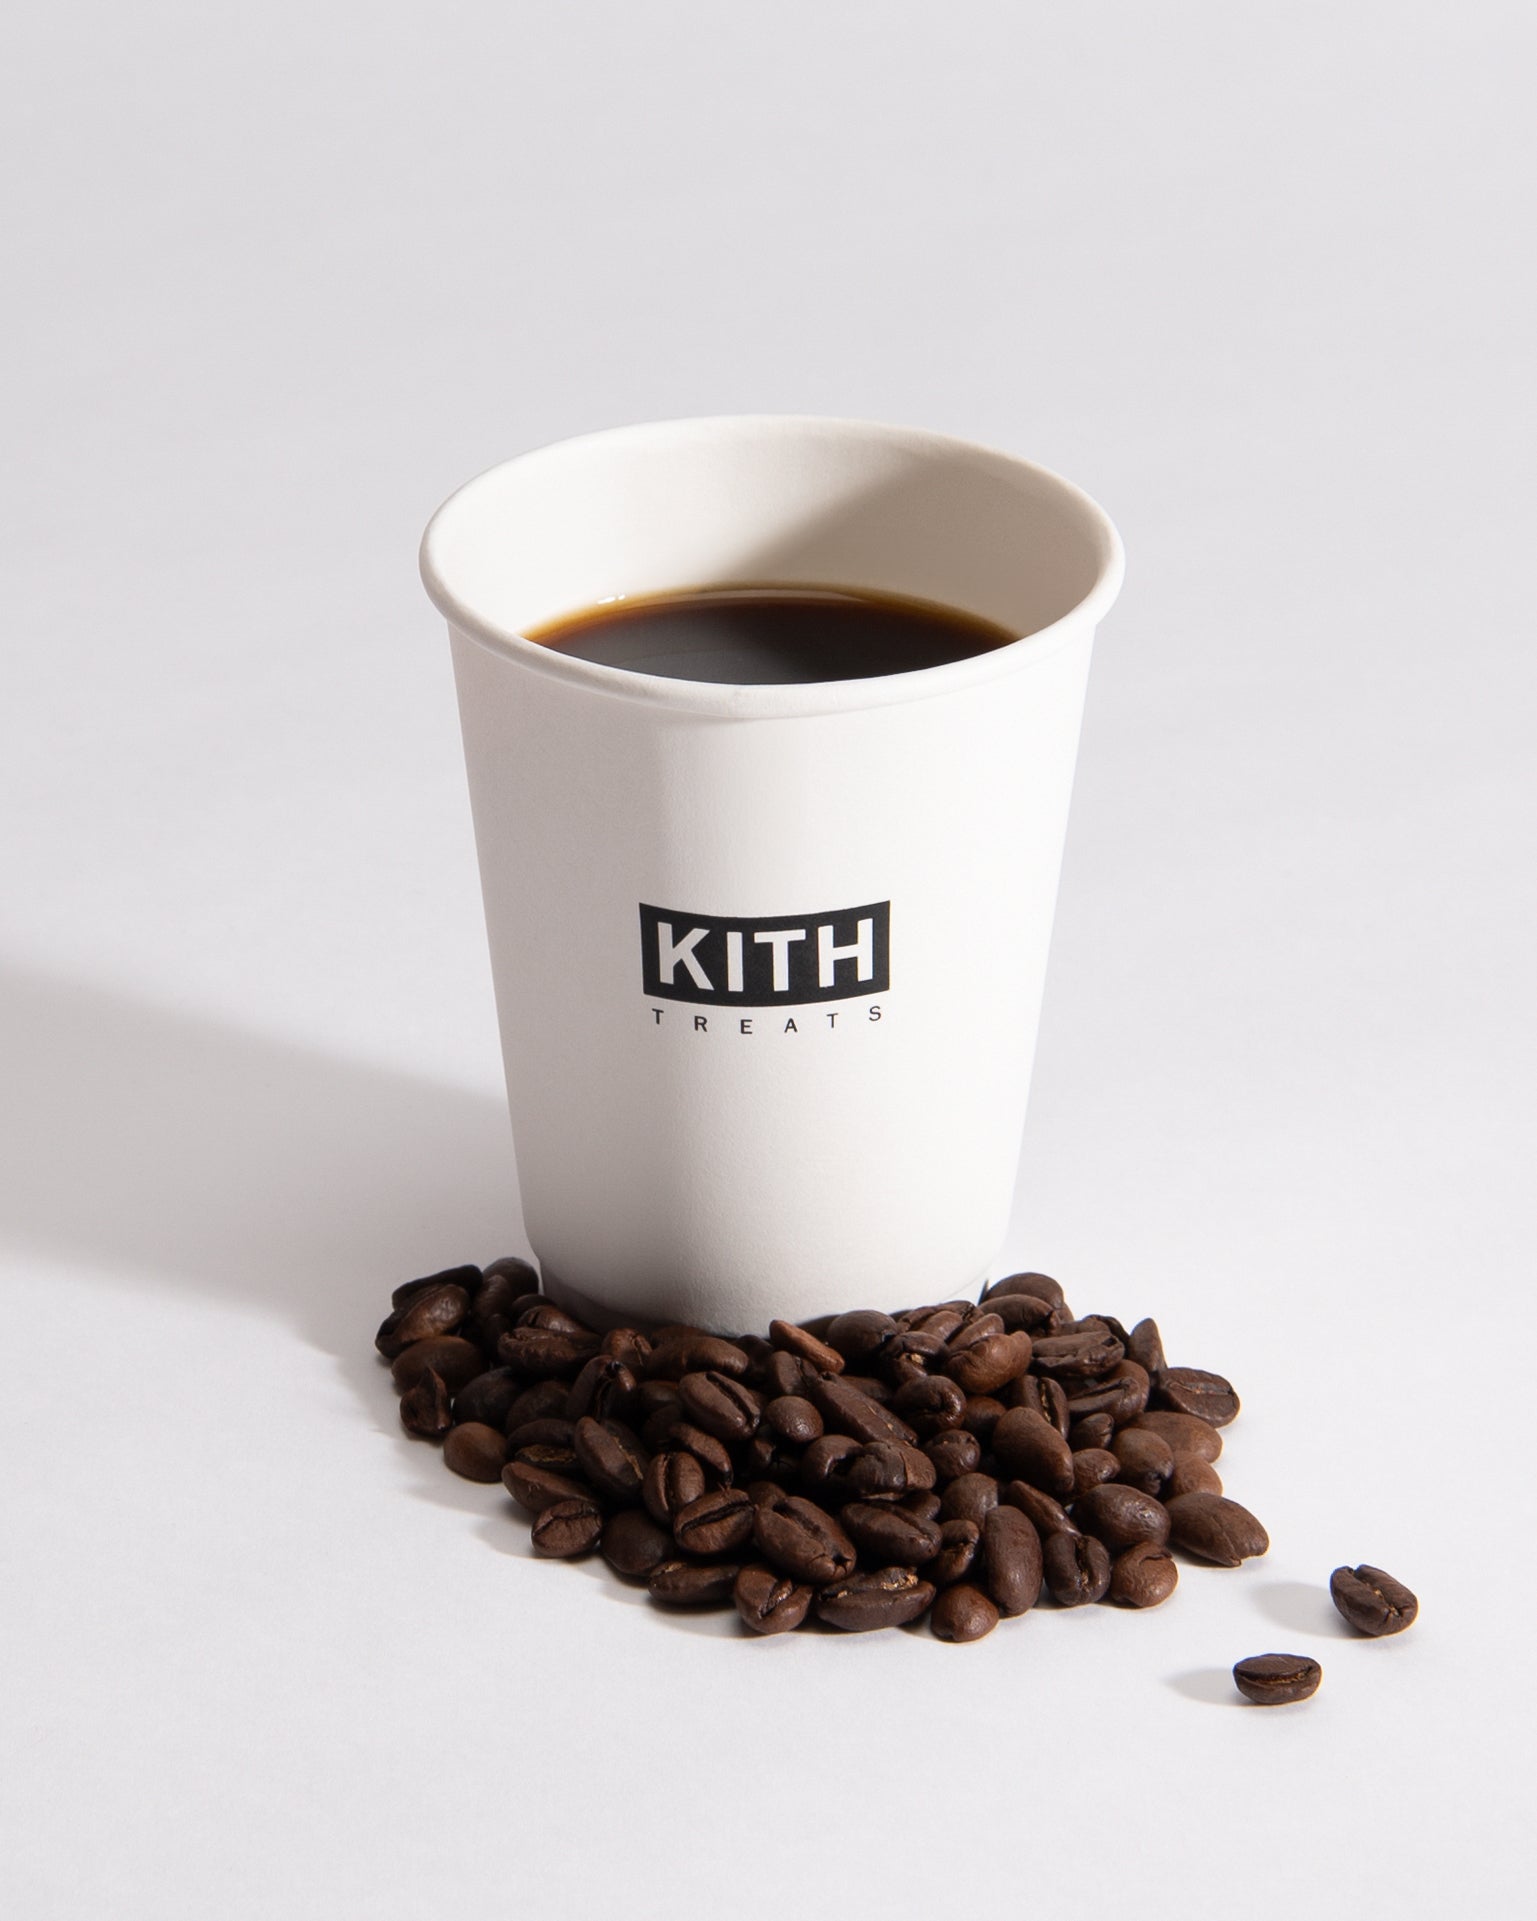 Kith Treats Cafe – Kith Tokyo